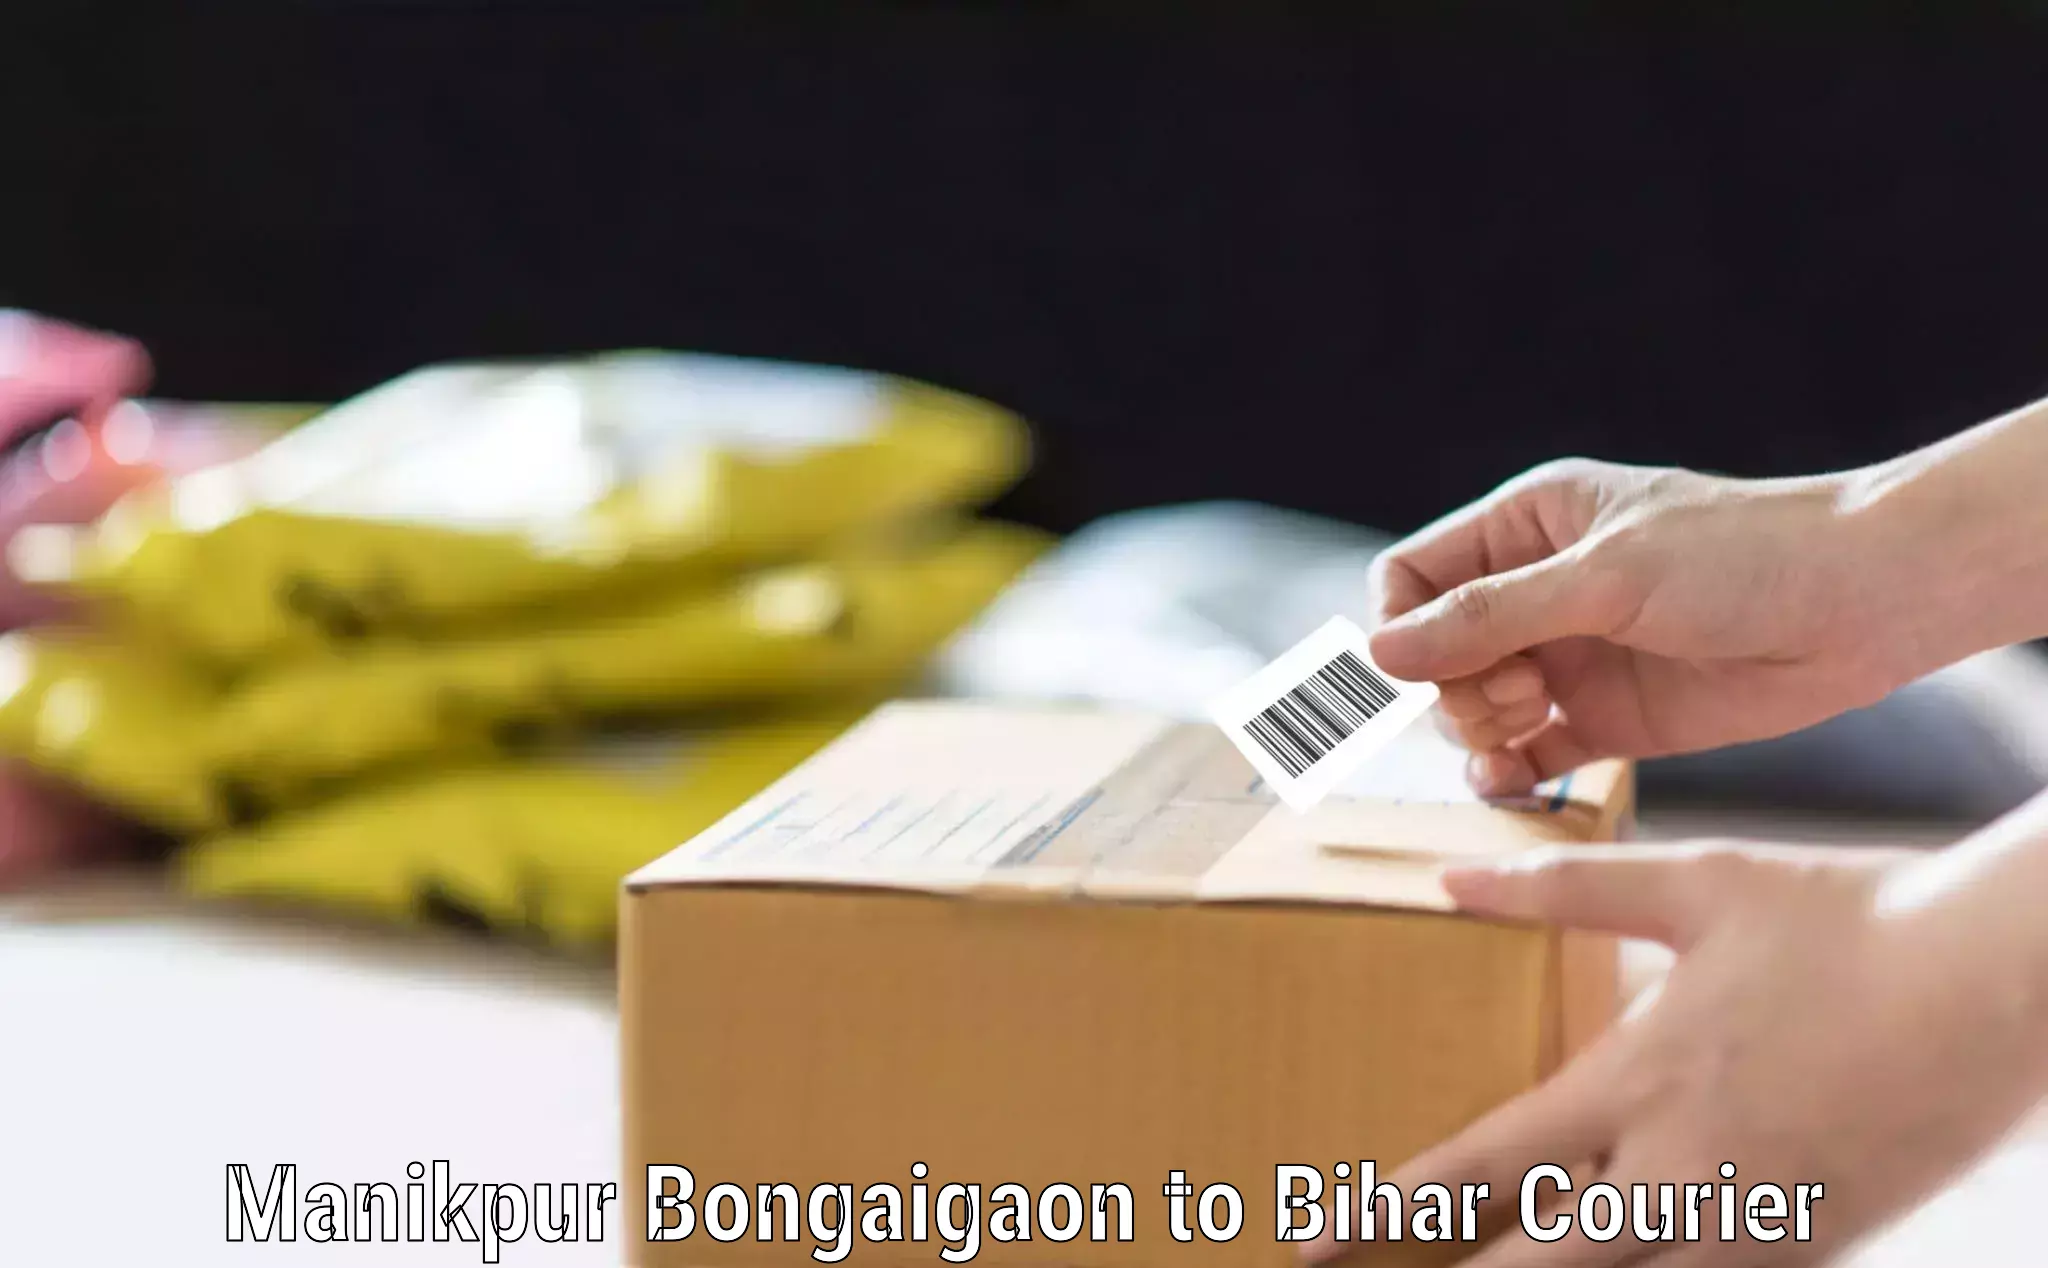 Baggage transport updates Manikpur Bongaigaon to Bihar